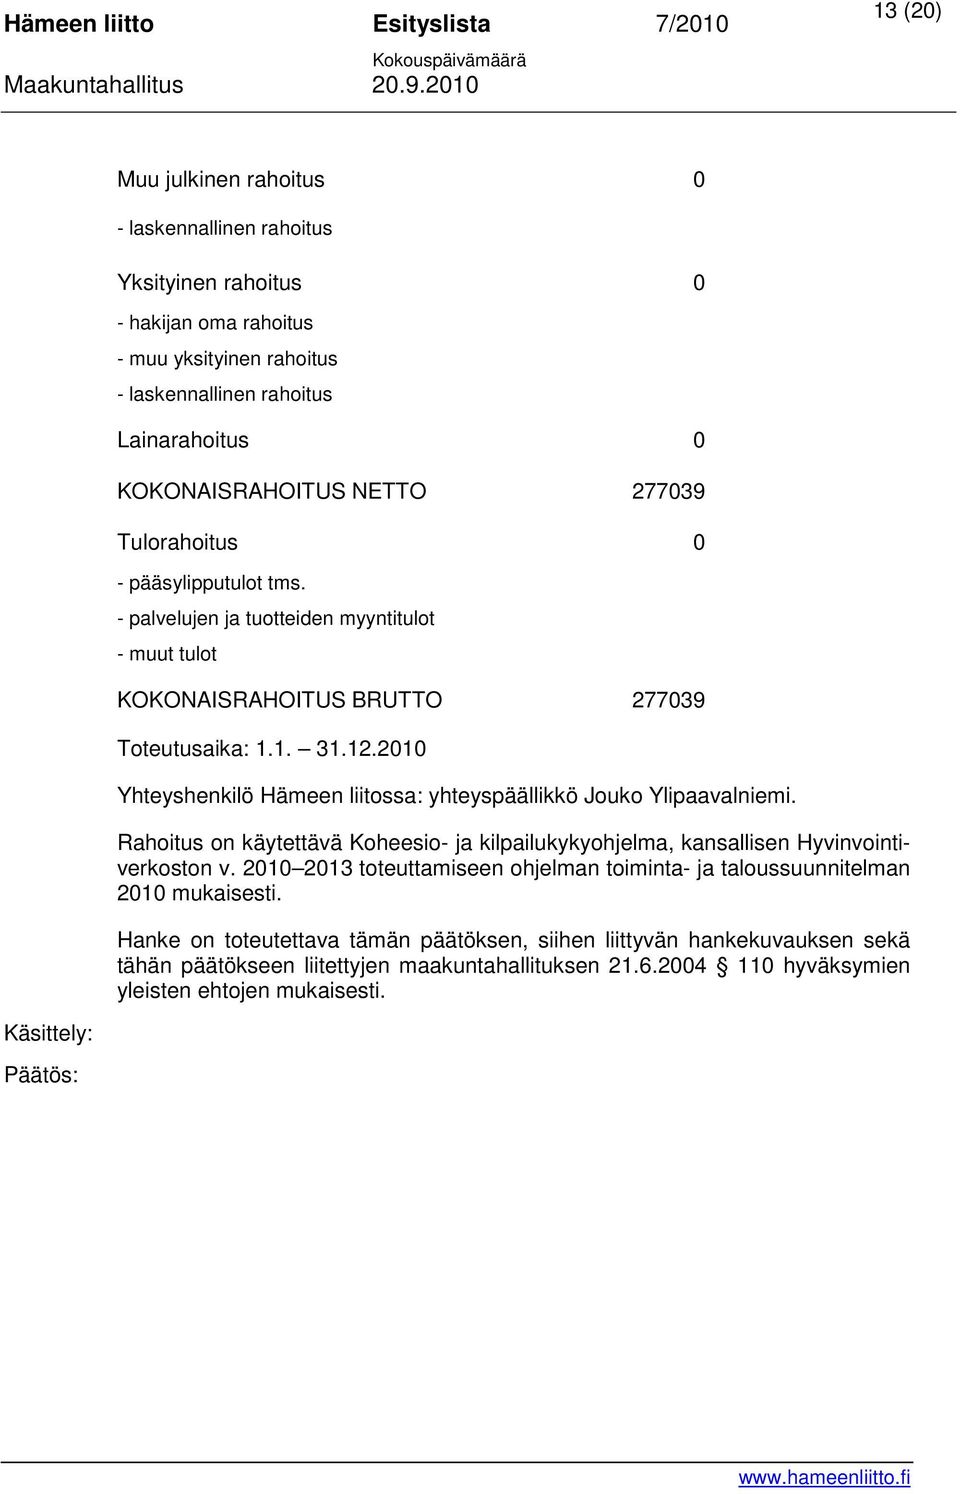 2010 Yhteyshenkilö Hämeen liitossa: yhteyspäällikkö Jouko Ylipaavalniemi. Rahoitus on käytettävä Koheesio- ja kilpailukykyohjelma, kansallisen Hyvinvointiverkoston v.